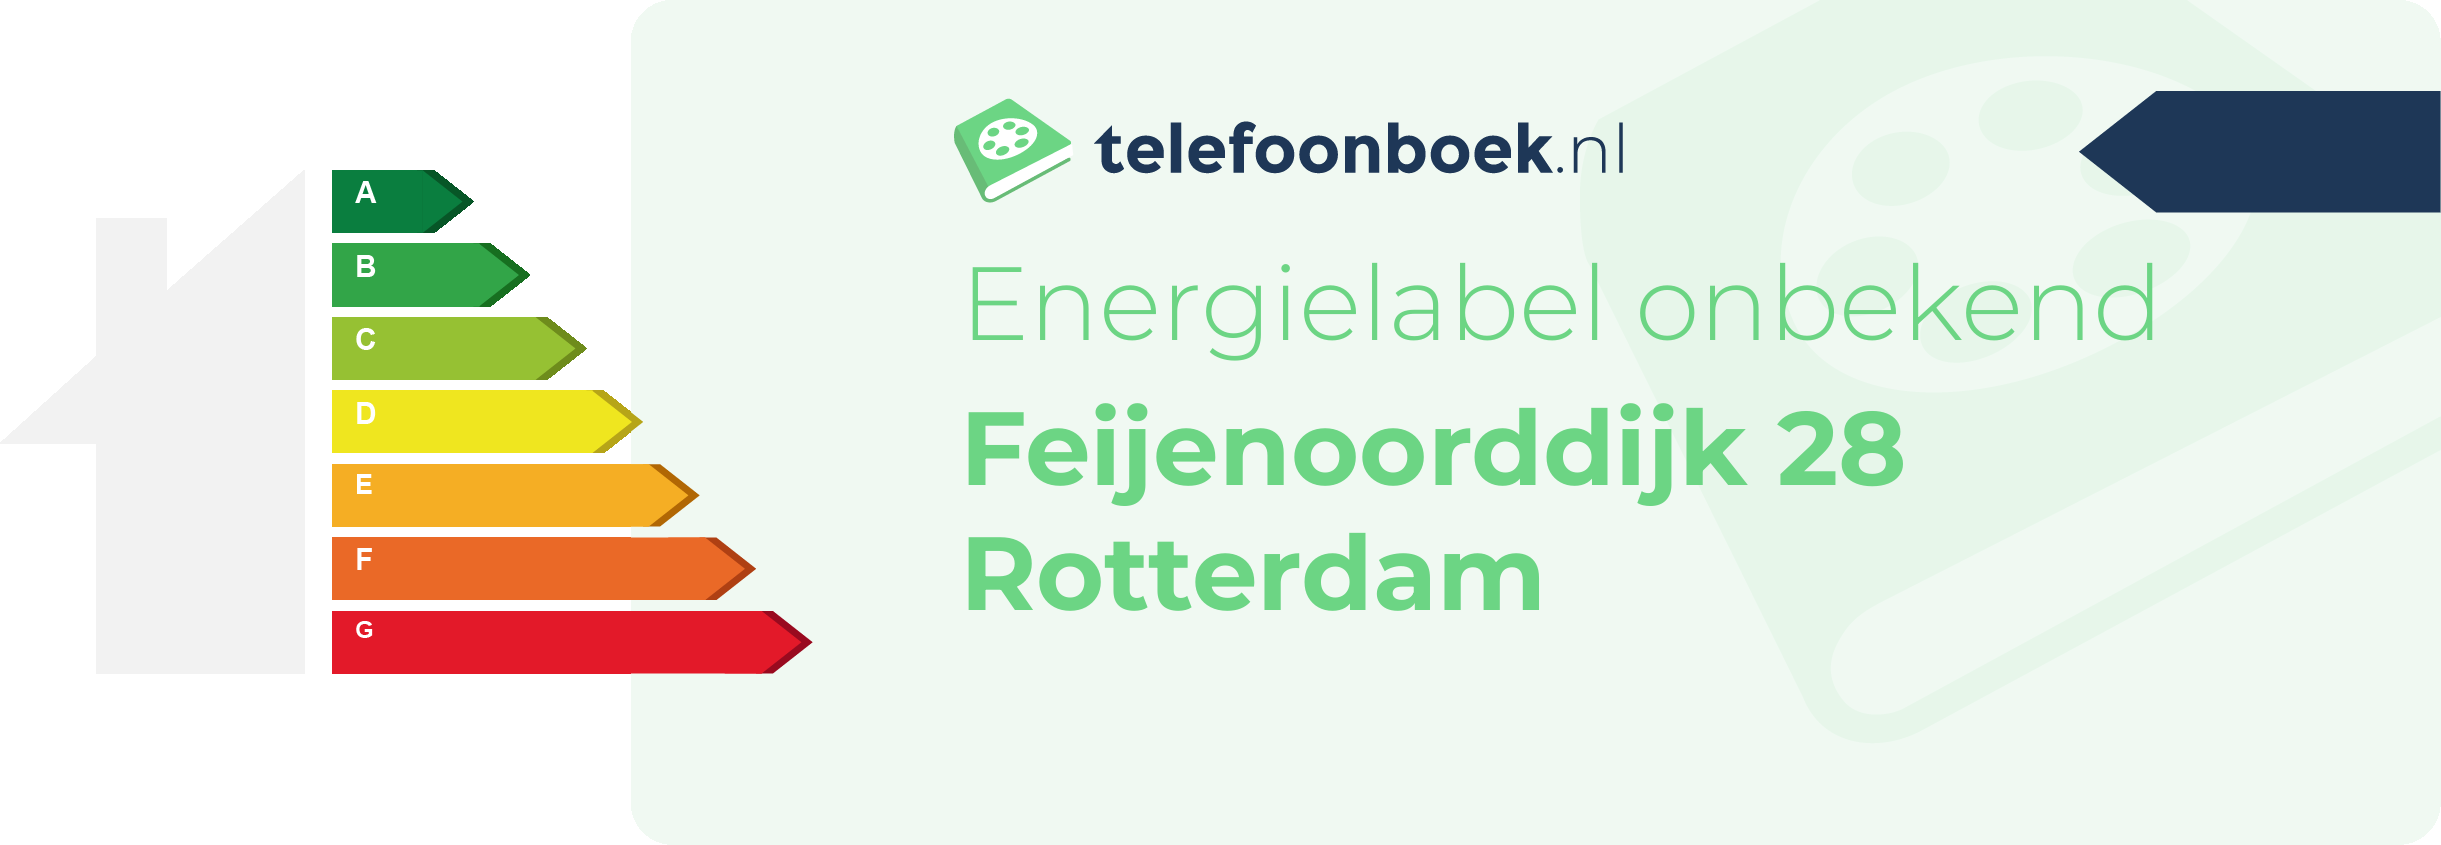 Energielabel Feijenoorddijk 28 Rotterdam